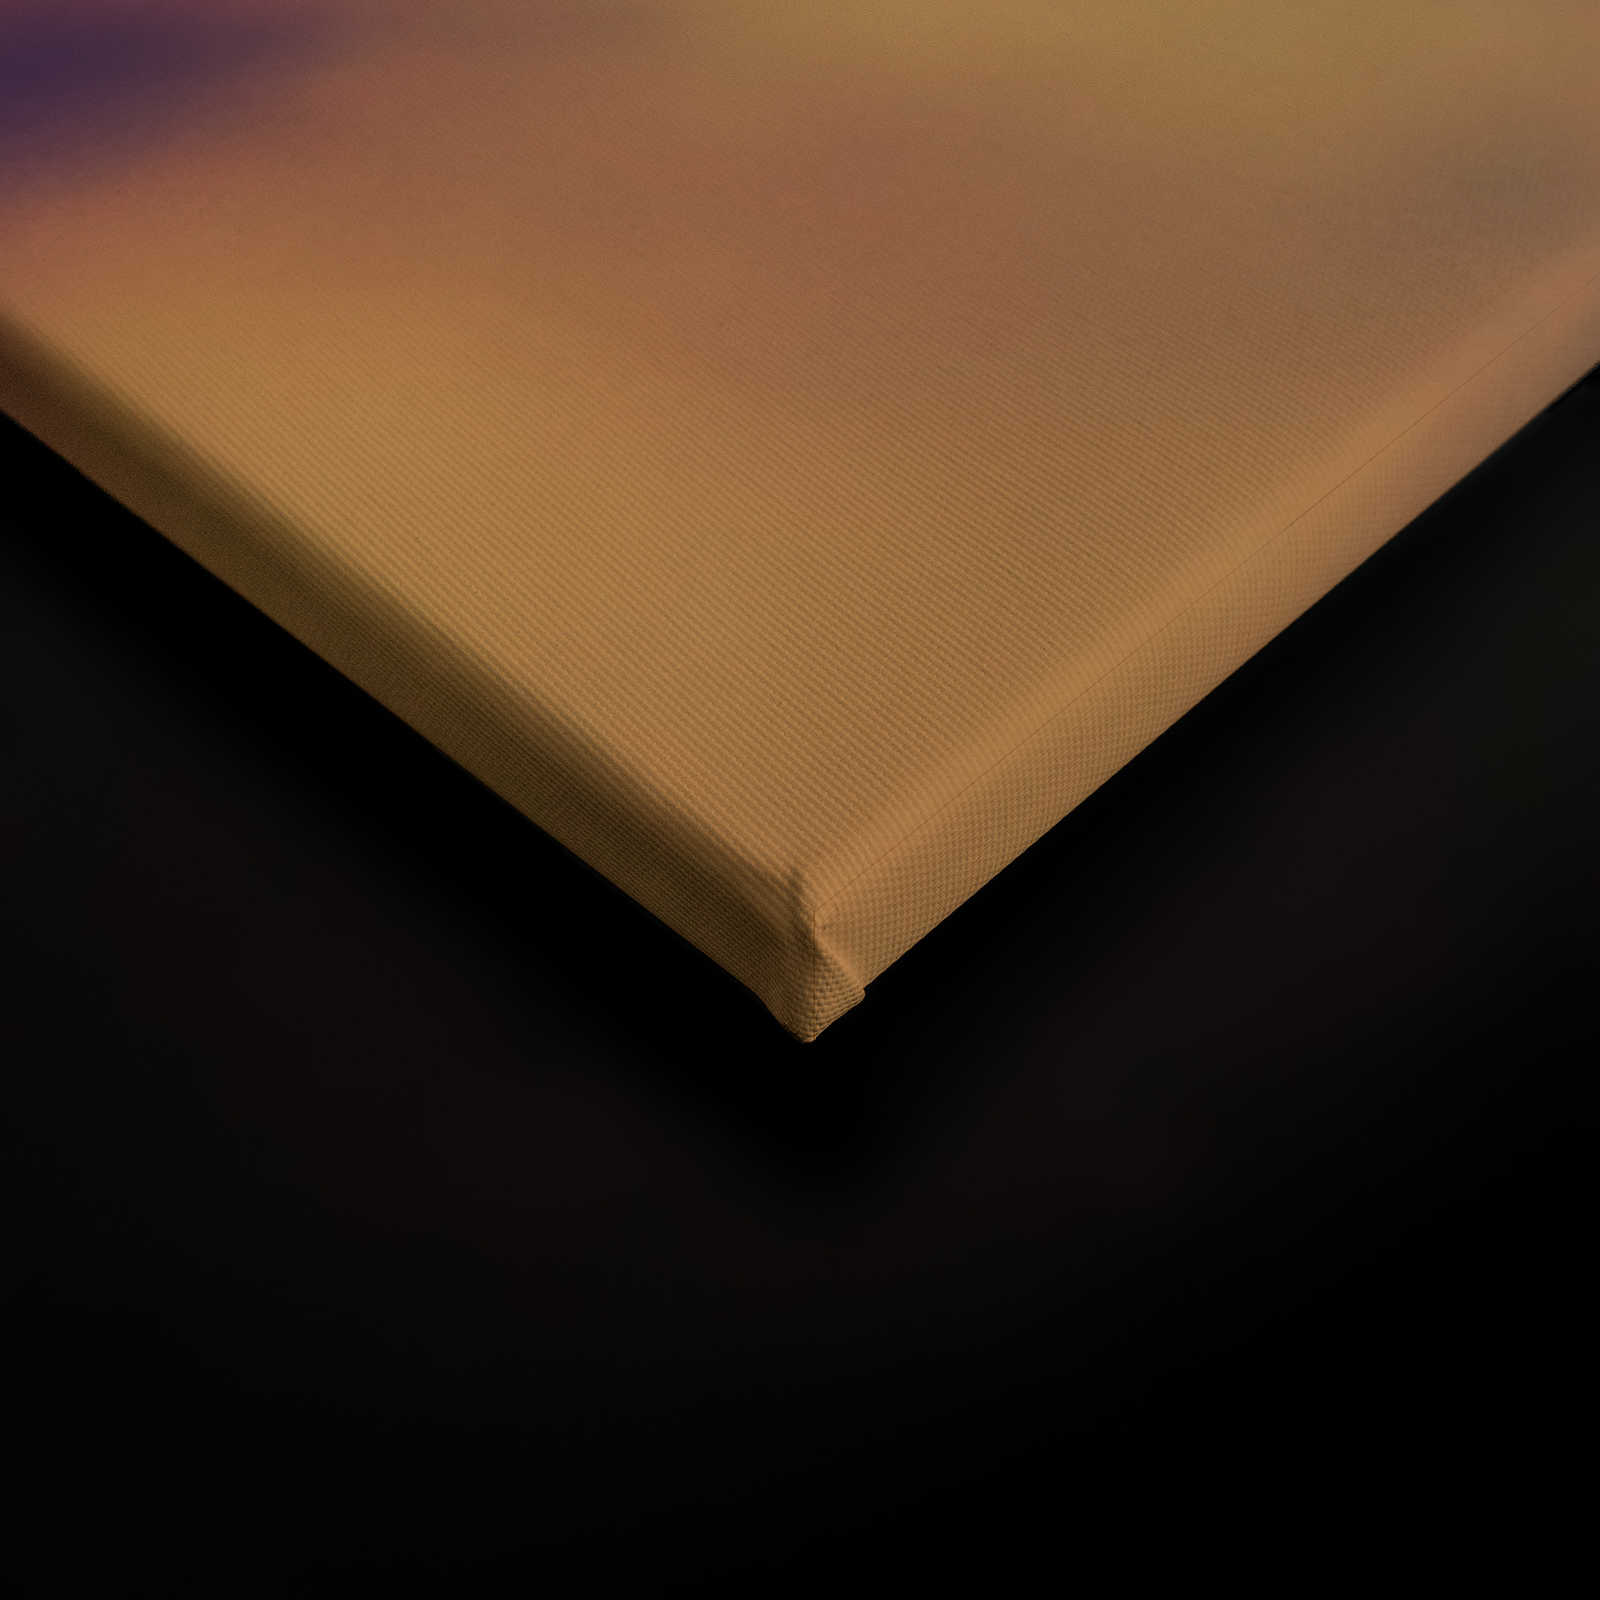             Leinwand mit Pusteblume Bildmotiv | Orange, Weiß – 0,90 m x 0,60 m
        